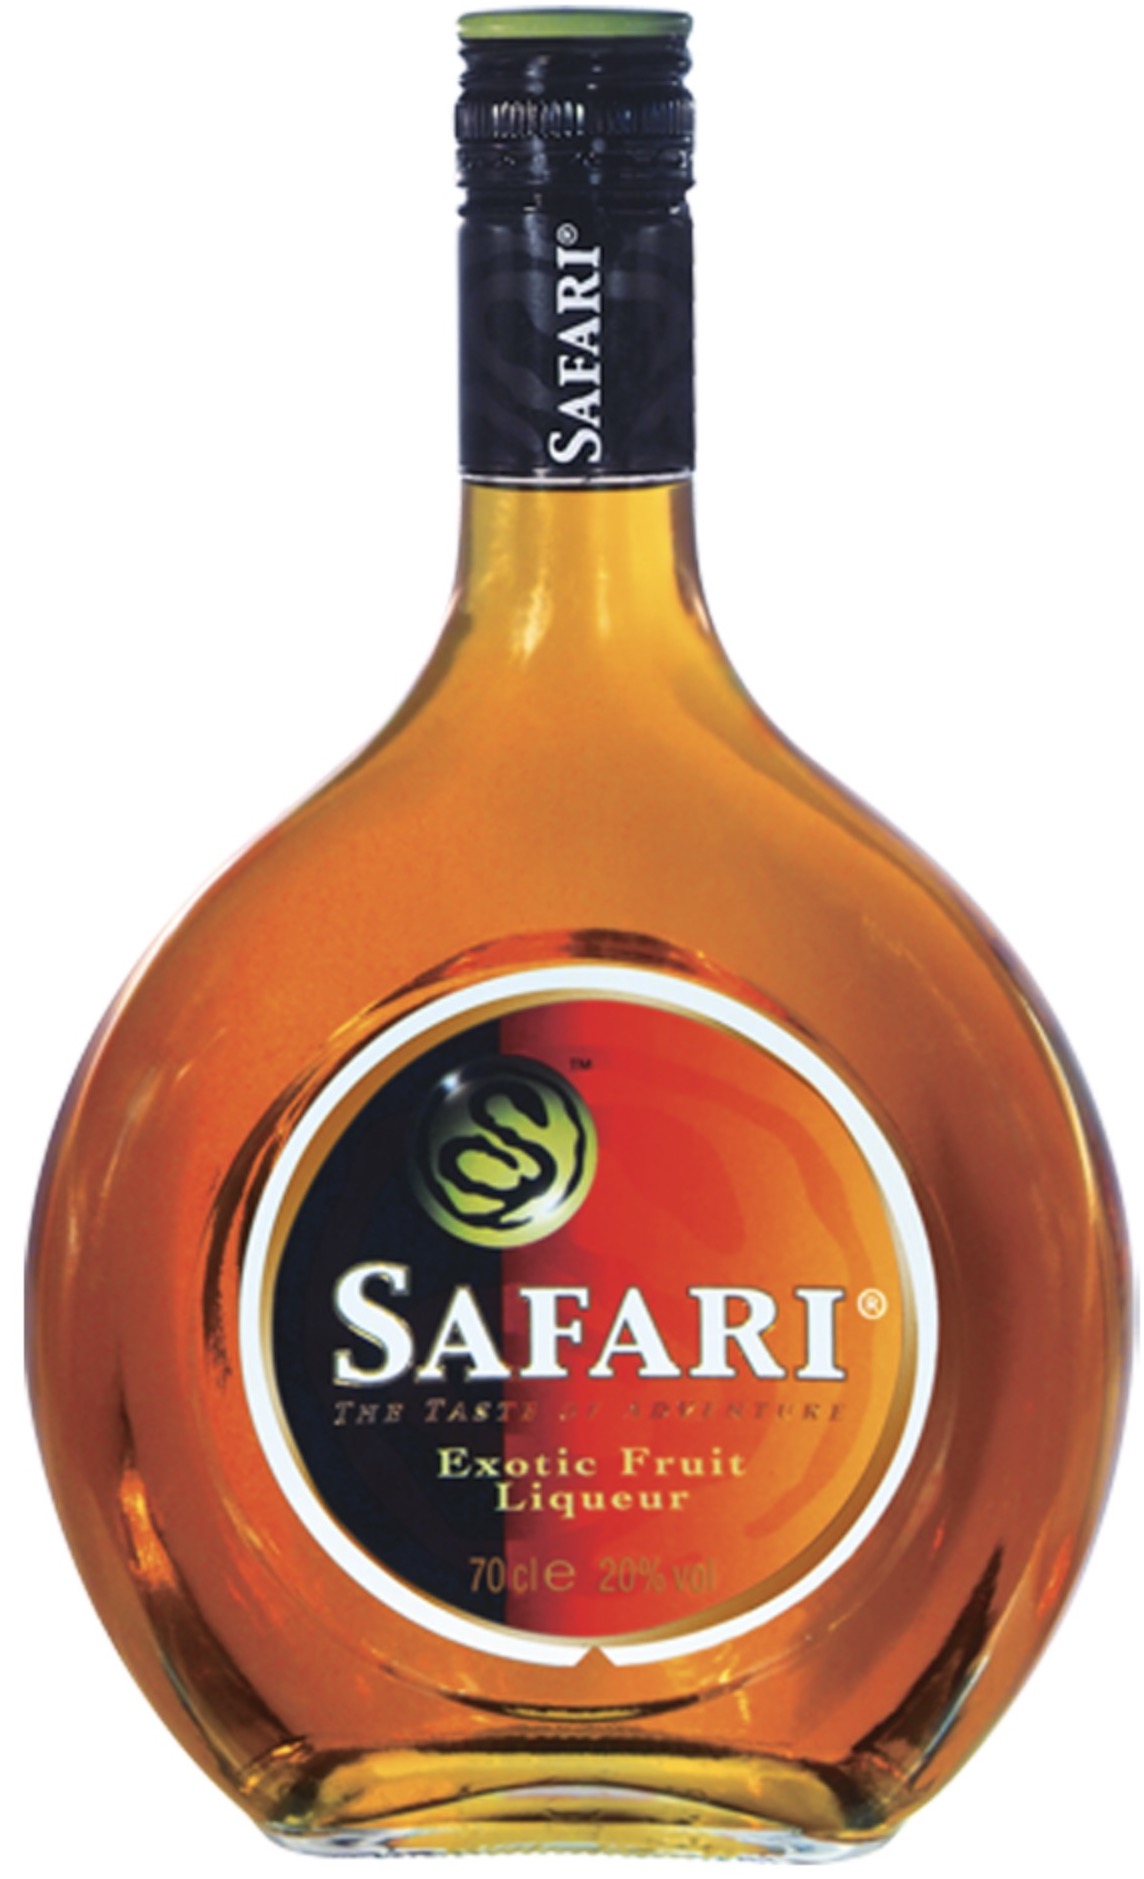 Safari Exotic Fruit Liqueur 20% vol. 0,7L